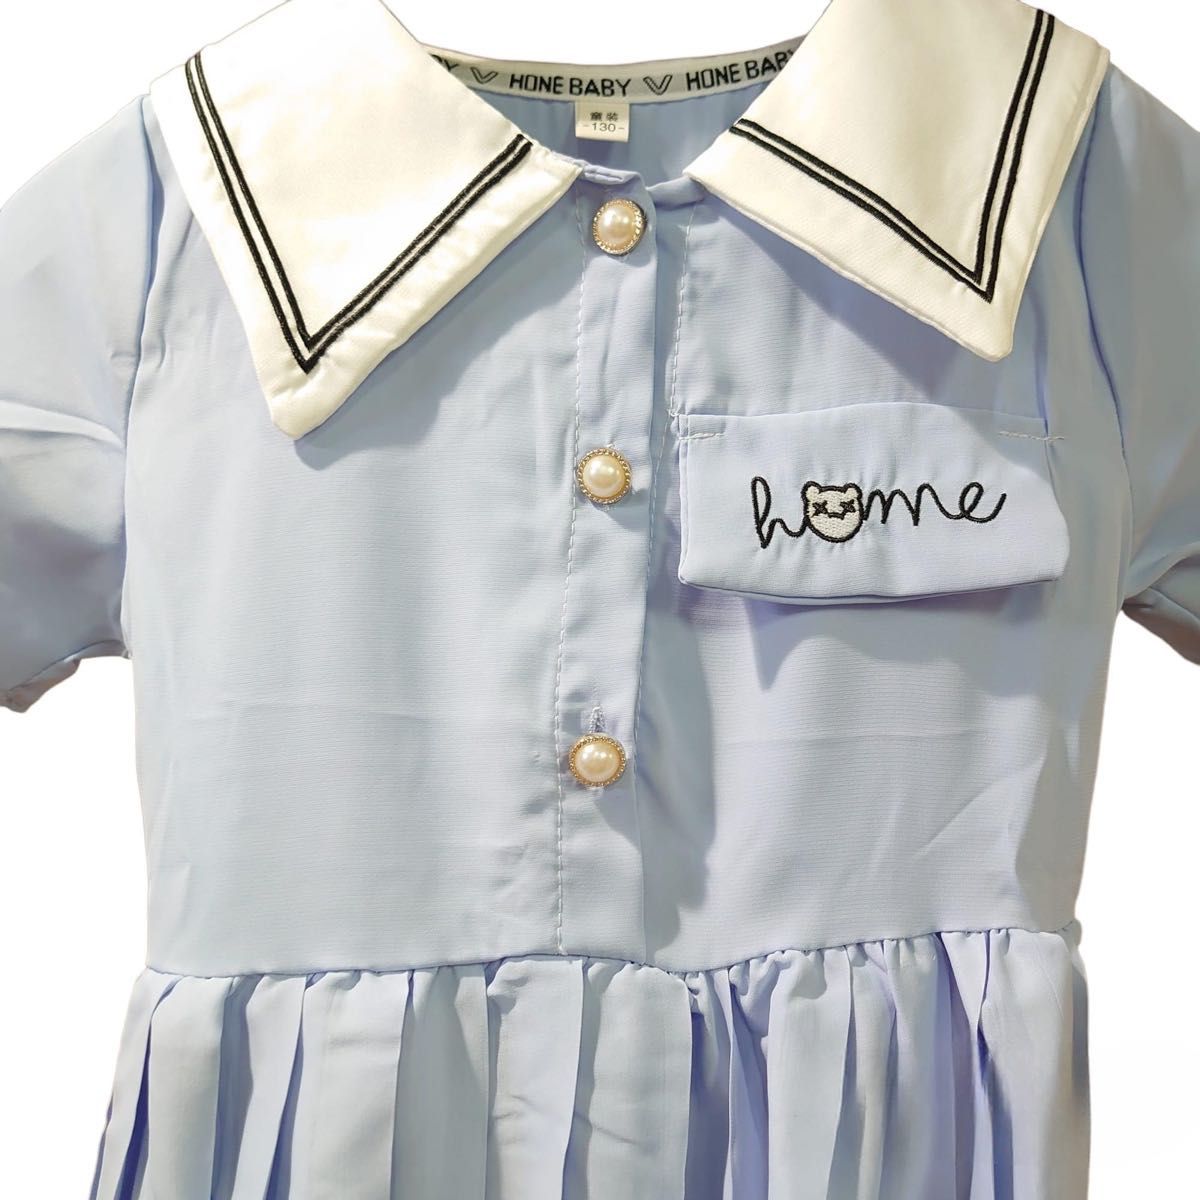 ワンピース 水色 ネクタイ 半袖 プリーツ スカート 綺麗  半袖 入学式 発表会 制服 女の子 子ども 可愛い セーラー服 襟 